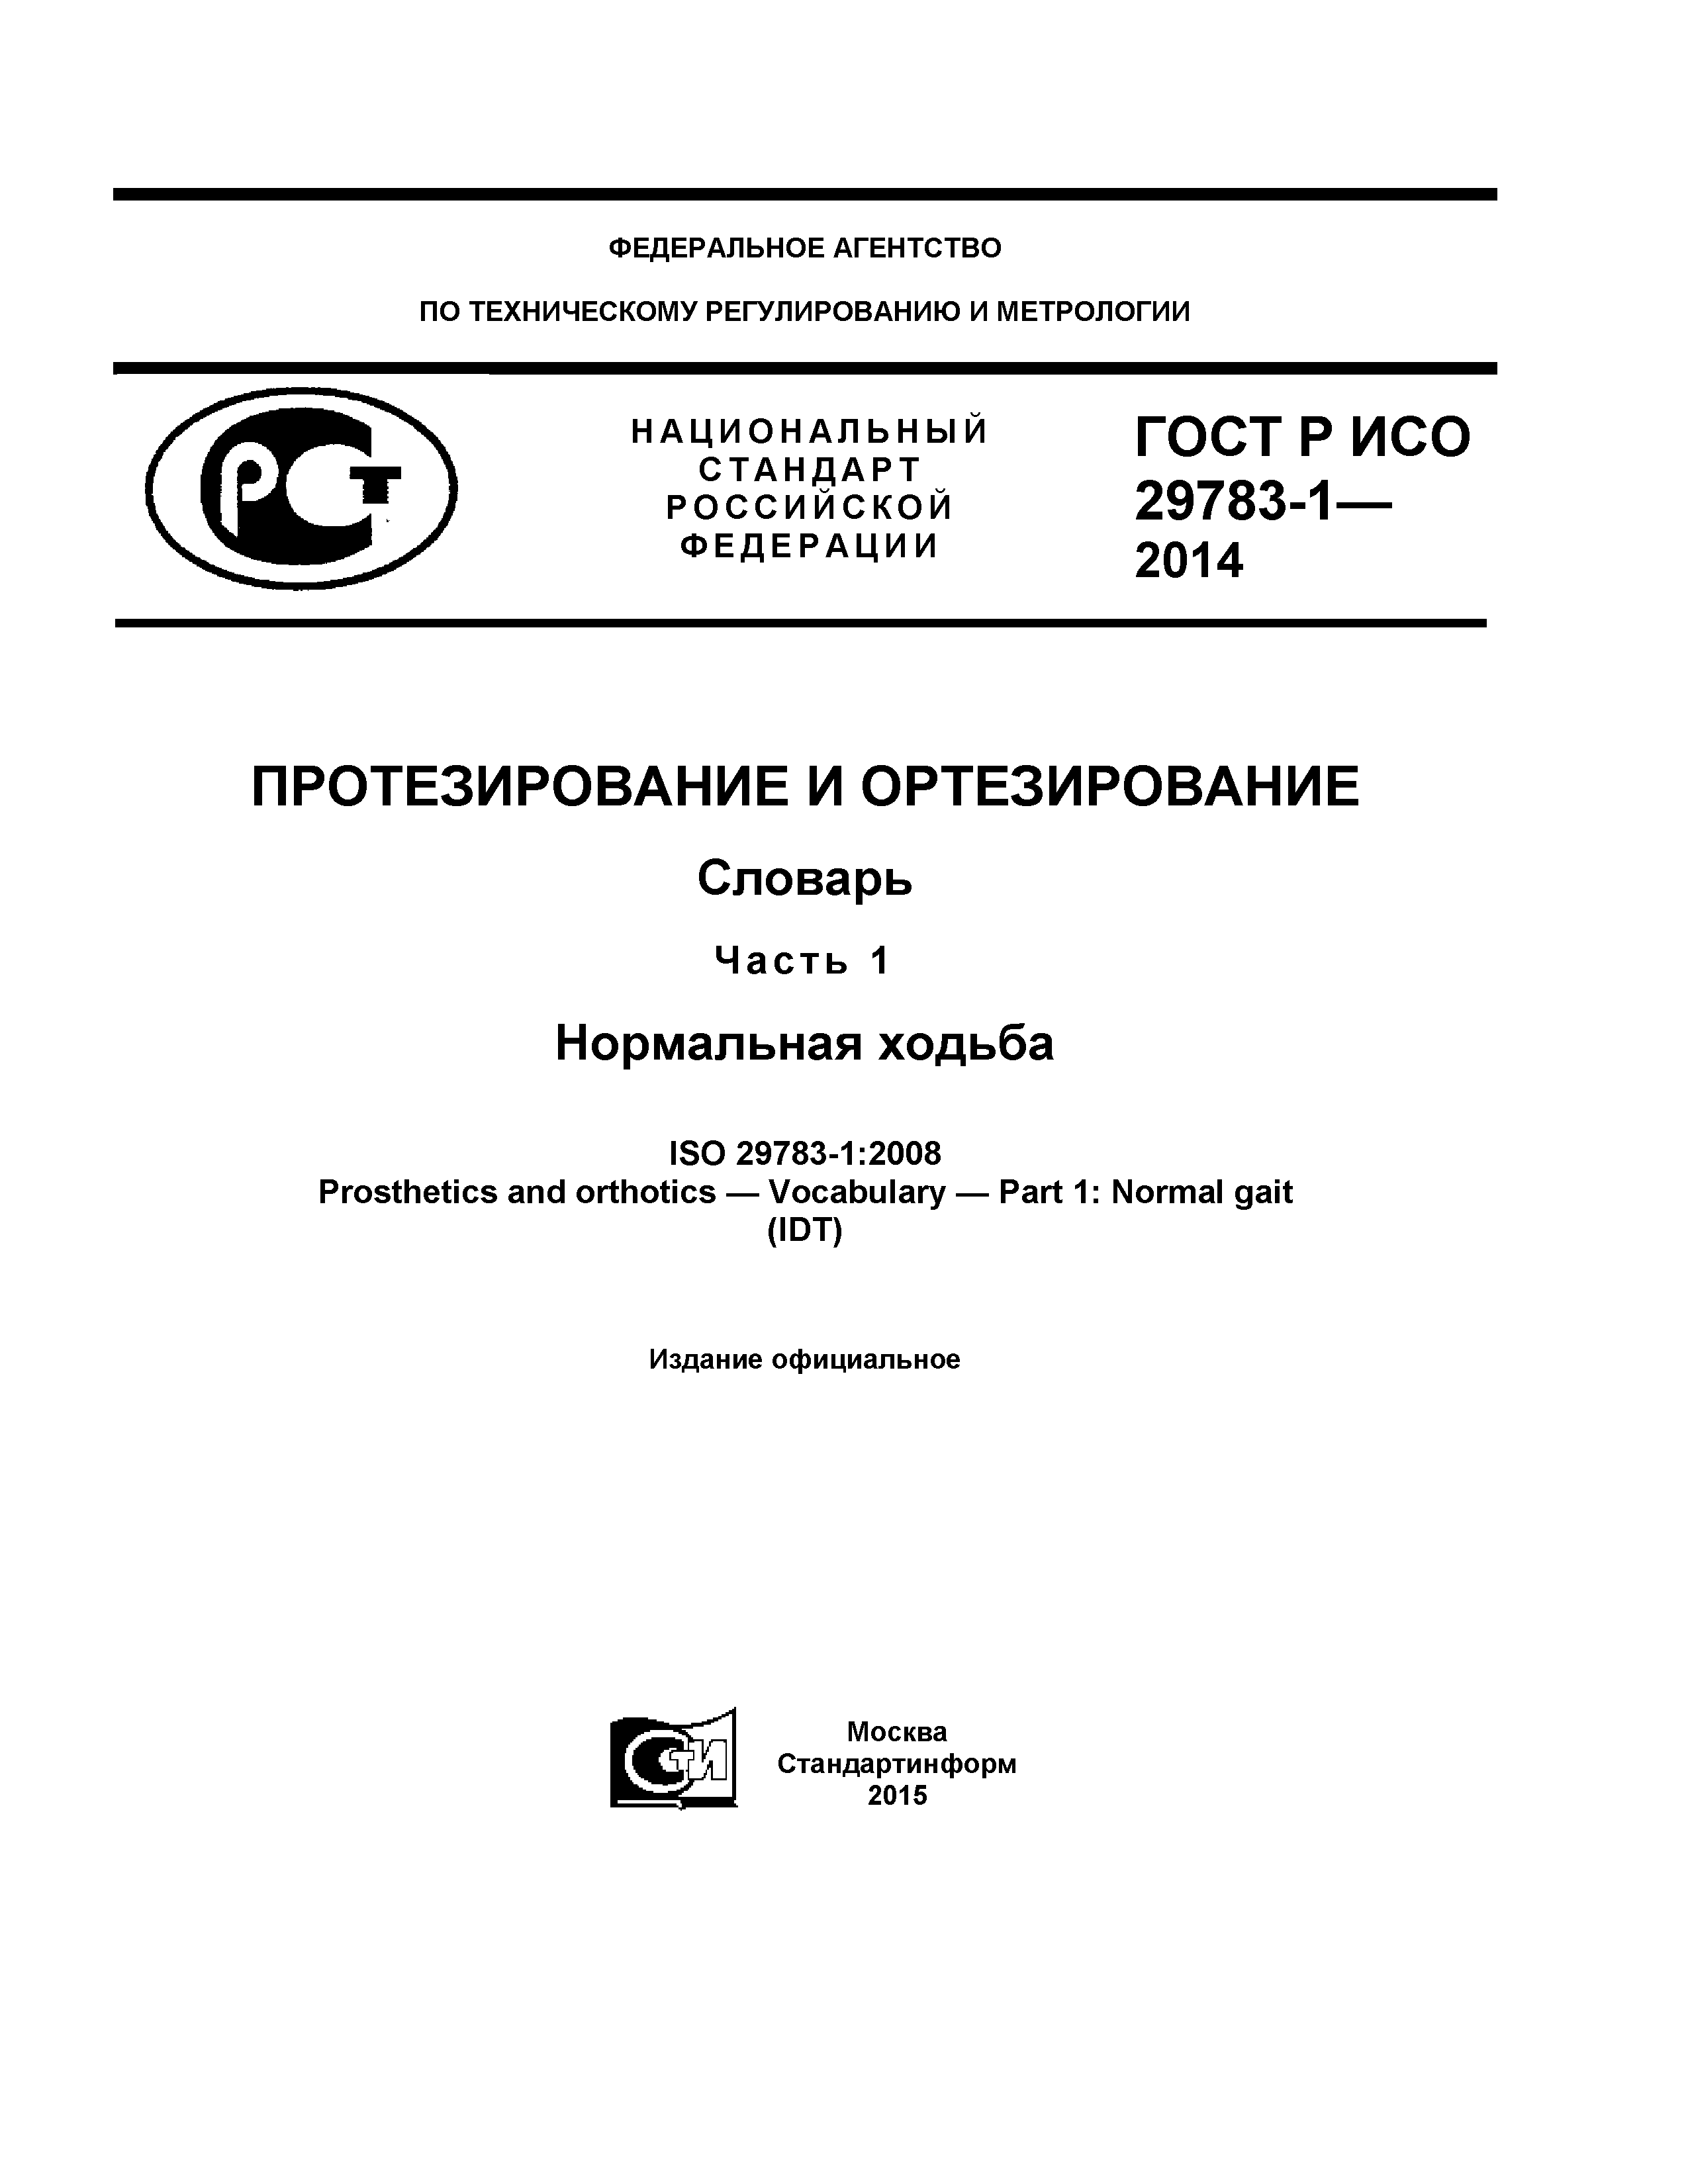 ГОСТ Р ИСО 29783-1-2014